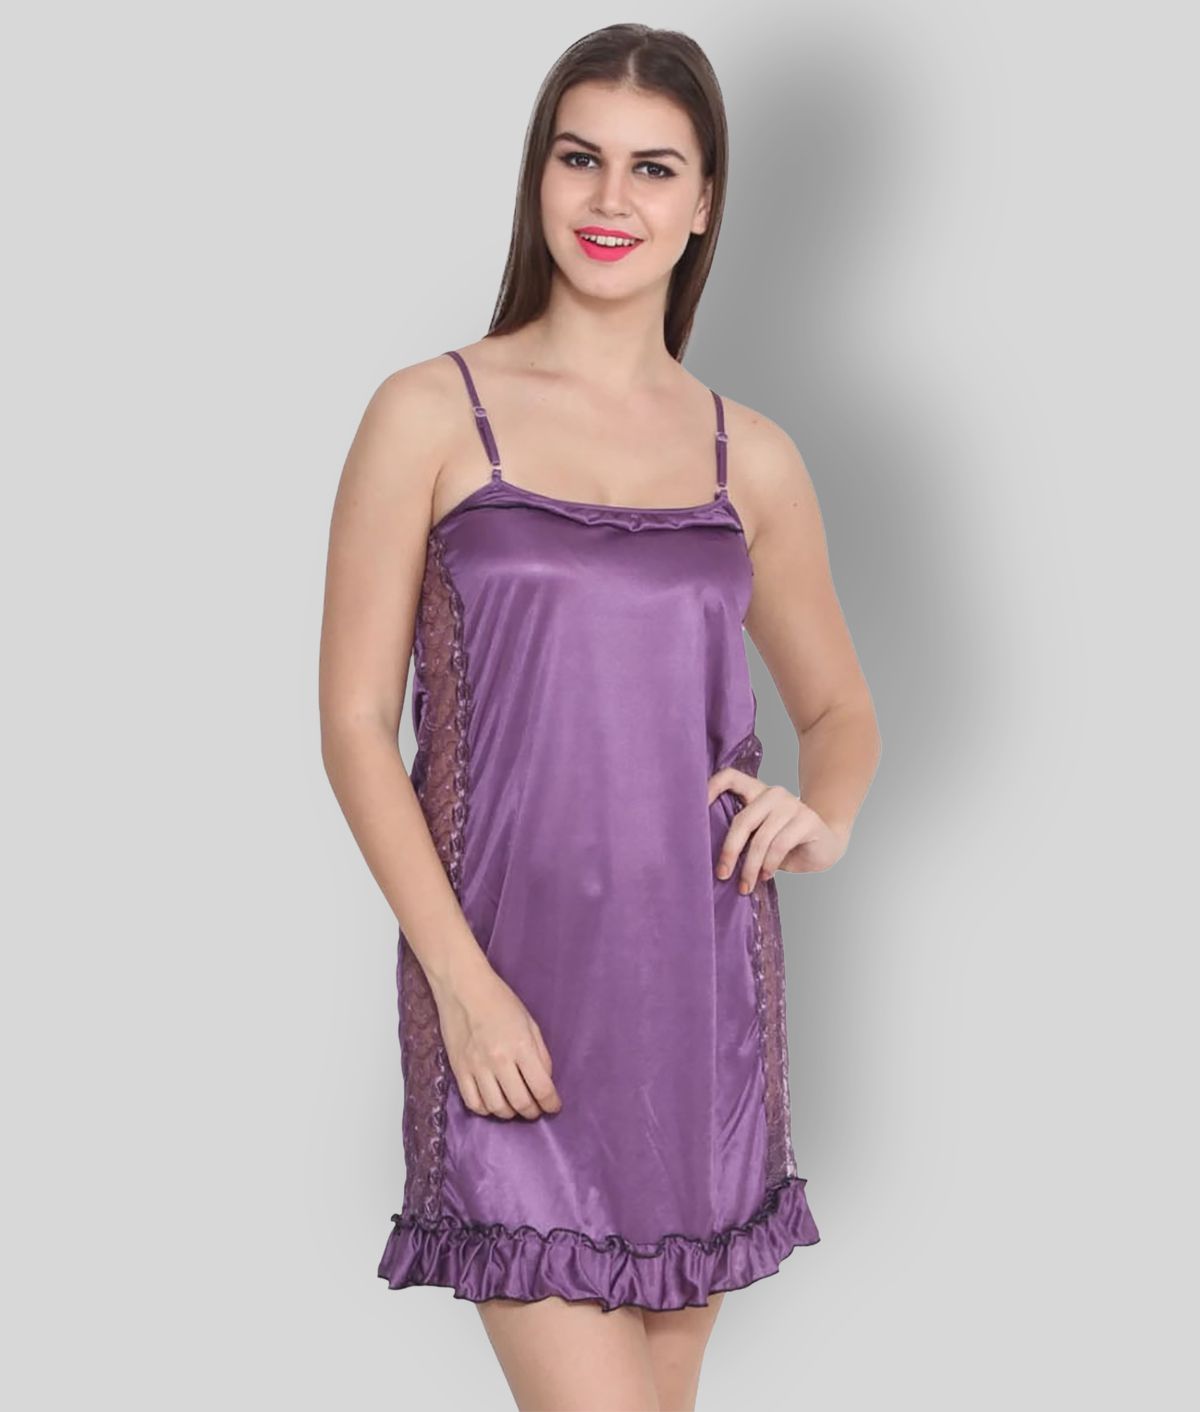 FEIJOA - Purple Satin Women's Nightwear Nighty & Night Gowns ( Pack of 1 )